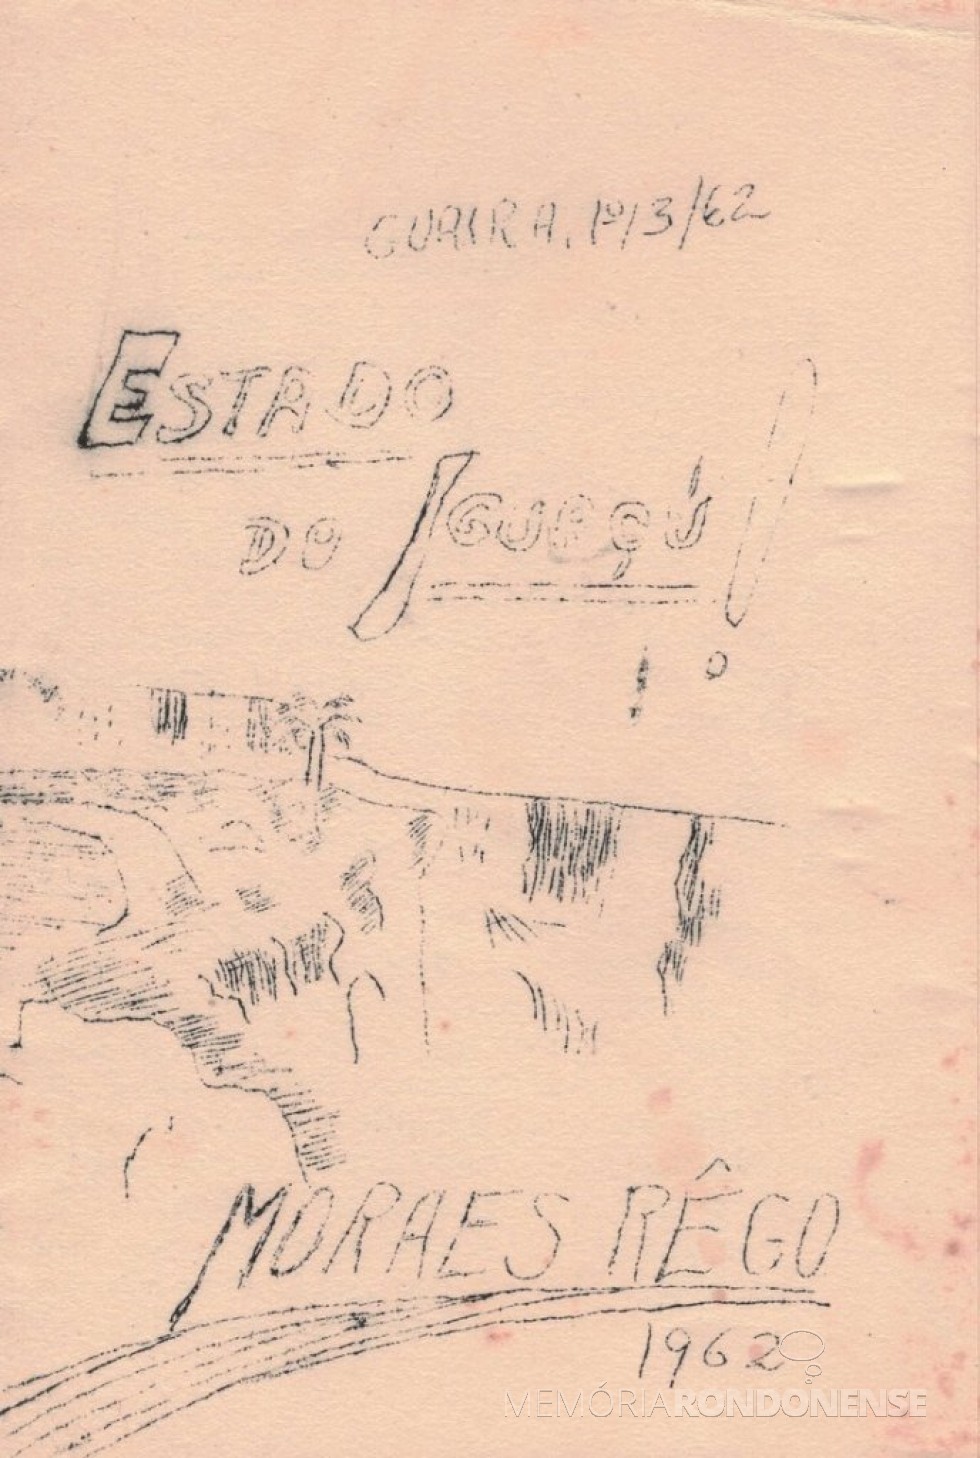 || Panfleto do vereador Moraes Rêgo, da cidade de Guaíra (PR), protagonizando o movimento pró-criação do Estado do Iguaçu, em março de 1962.
Este documento em suporte de papel foi doado ao Museu Histórico Willy Barth (de Toledo, PR), pelo Sr. Francisco de P. Calleya, em 27/02/1985. - FOTO 10 -